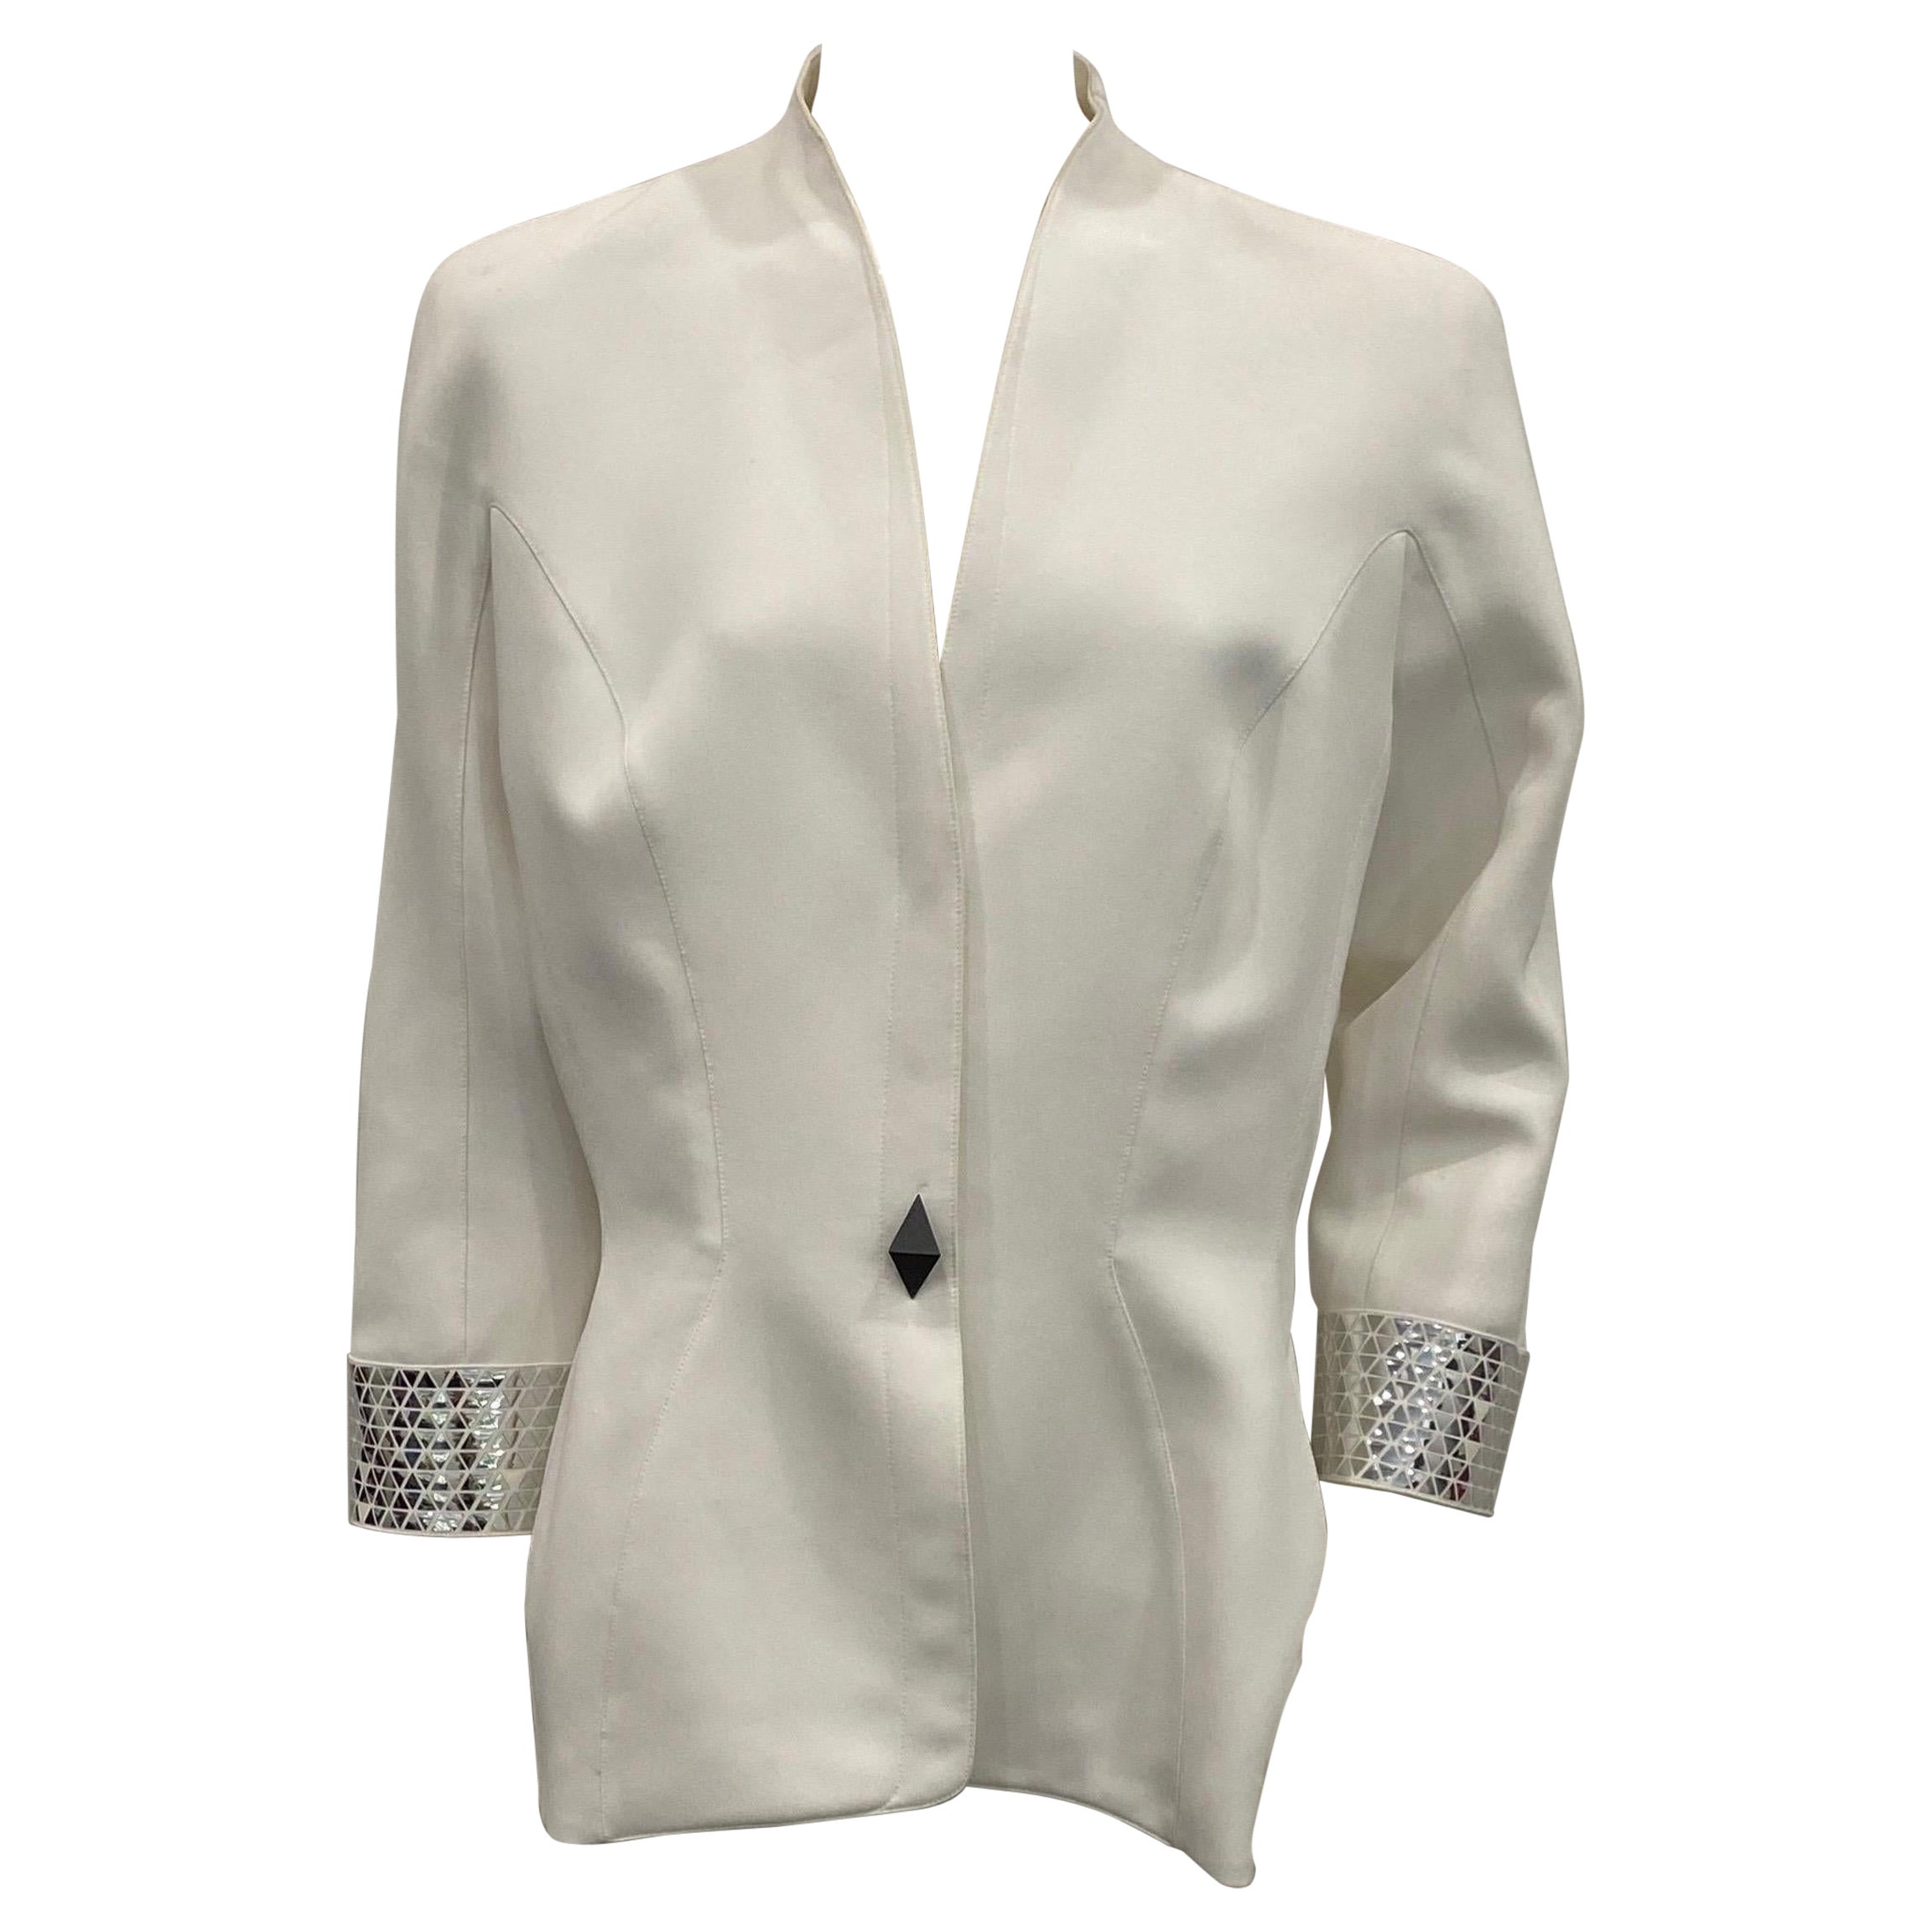 Veste blanche Thierry Mugler Couture des années 1990 avec détails métalliques argentés - Taille 46